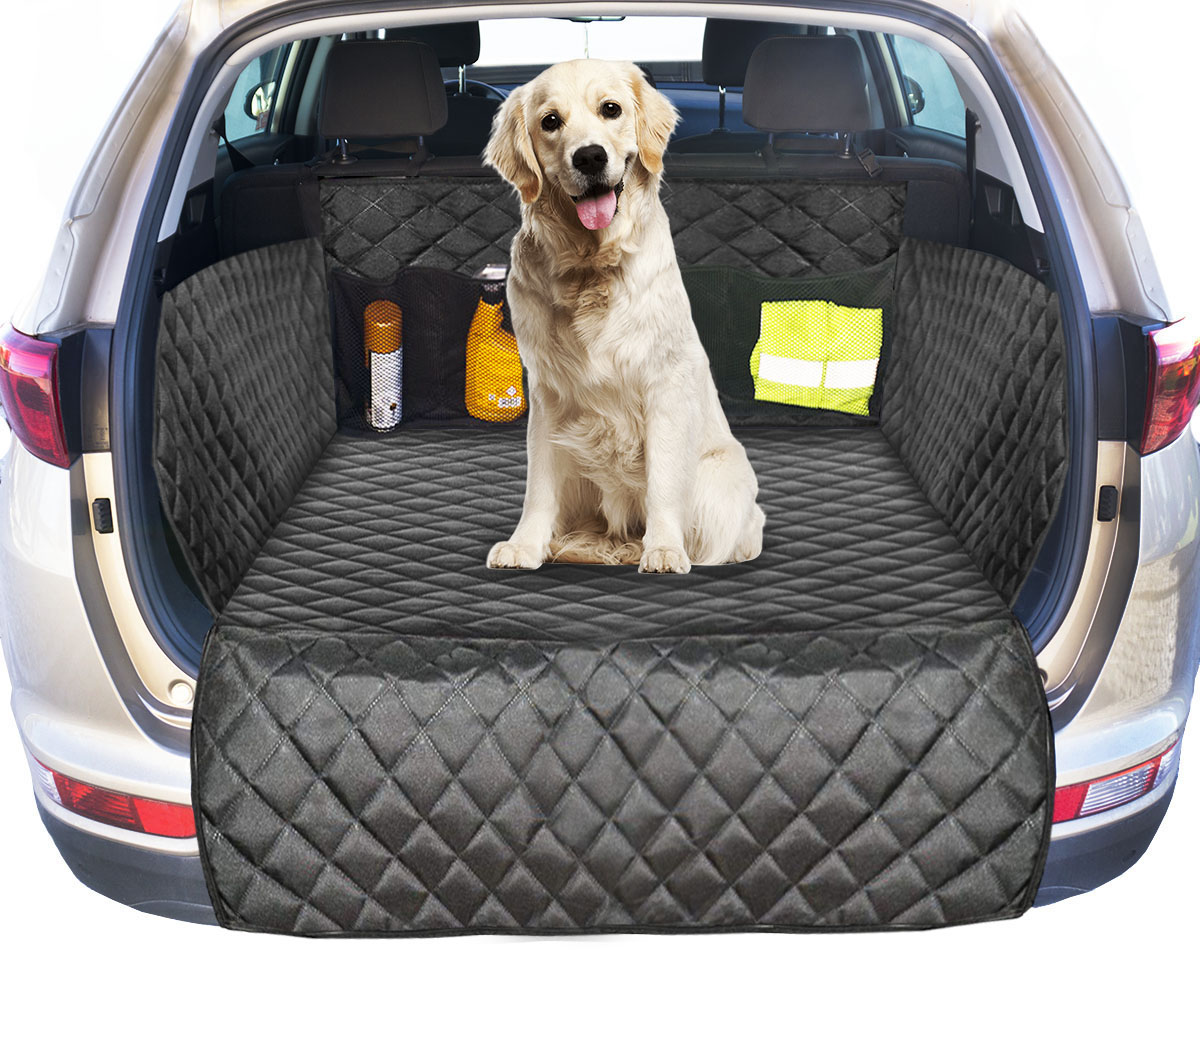 Машинки для собак рейтинг. Чехол в багажник для собак в Ауди q7. Автонакидка для собак Элит одинарная, Elite. Коврик для собаки в машину в багажник. Накидка в багажник автомобиля для собак.